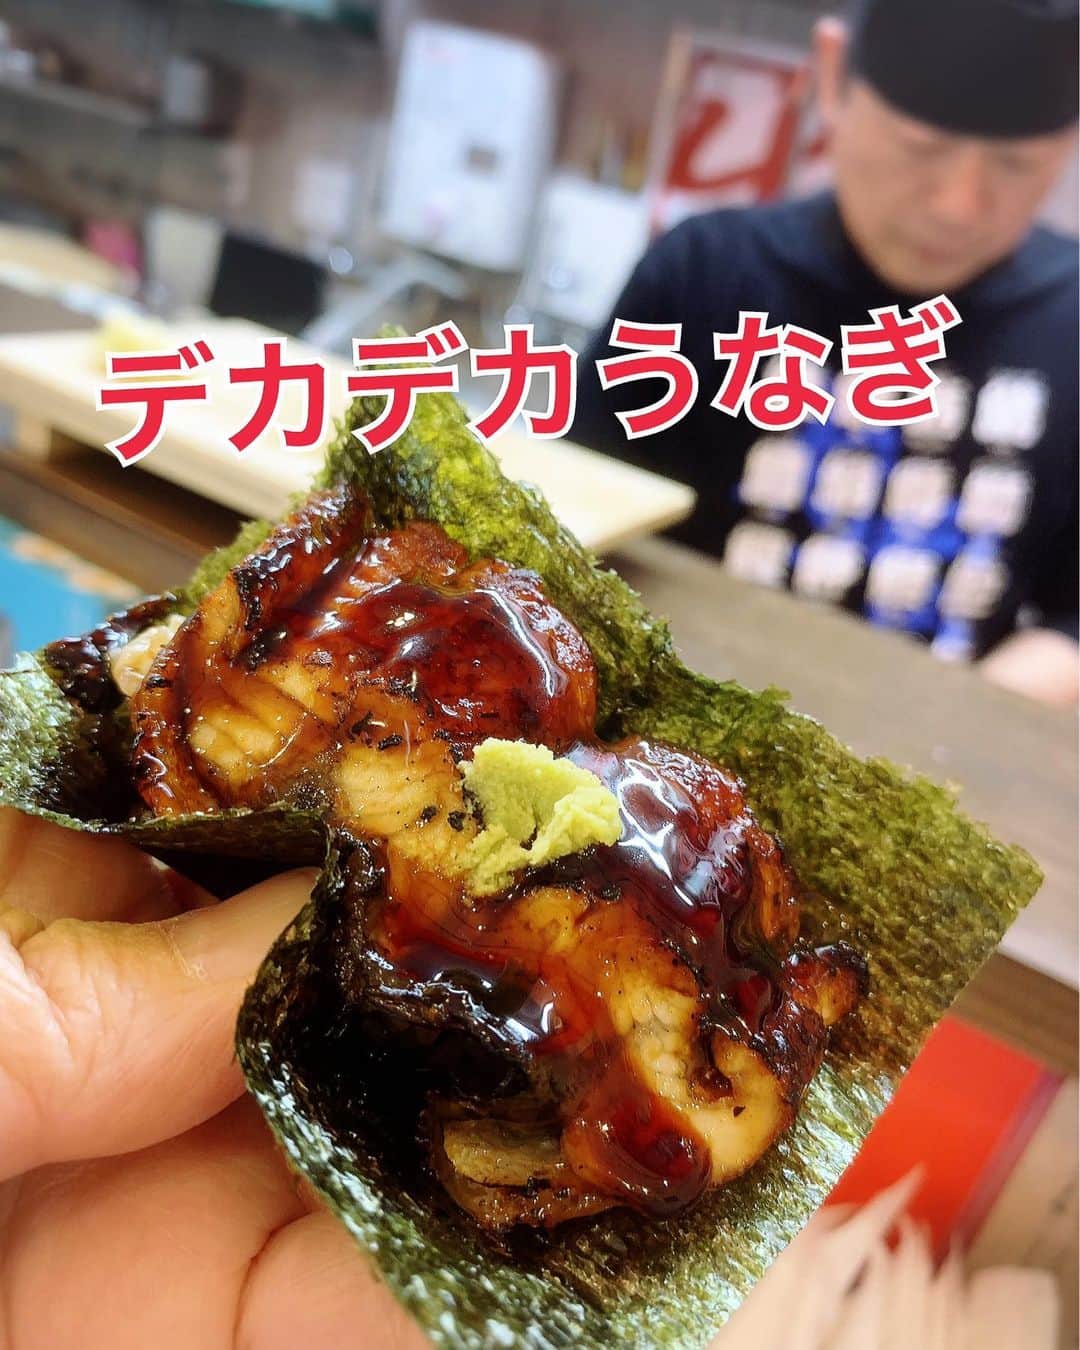 まんまるともぴーさんのインスタグラム写真 - (まんまるともぴーInstagram)「🇰🇷韓国料理やコリアンタウンで 有名な大阪・鶴橋ですが それより何より‼️オススメな  新鮮なお魚さん🐟や魚介🦪🦐が 手に入る鮮魚市場があるので 美味しいお寿司🍣が 食べられちゃうんですよ😋💕  グルメで食通なきよっさん @kiyoshi1080  に連れてっていただいた  鶴橋でお寿司を食べるなら 知らなきゃモグリ😆❣️なお店が サイコーすぎたので‼️ た〜っぷ〜りご紹介🤗✨  【立喰寿司🍣生野流】 @sushi_ikunoryu   とにかく大将がオモロいのなんの 寿司を握りながら永遠に♾️ 喋り続けてる🤣  話に引き込まれちゃって 📸写真も撮りたいものだから 笑いながらオタオタしてたら 『早よ食べや〜‼️』って😂  天然や国産にこだわった プロも唸る食材を使用した 種類豊富なこちらのお寿司は  🇯🇵日本の文化🗾 🖐️手で食べるのが生野流😋💕  シャリやネタが解き放つ 温度や波動を直接感じながら １つひとつお口へ運ぶと  素材の持つ素晴らしい旨みや 甘みがしっかりと伝わってきます☺️  どれも本当に美味しかったんだケド 特にお気に入りなのが  🍣赤身ミシュラン風　300円 🍣とろミシュラン風　600円  通常の2〜3倍あるネタは どちらもトロけるような舌触り😻  鮪の良さがズッシリと凝縮されていて こりゃあたまらん🤤💓  🍣ネギトロこぼれ　350円  これもまたどっさりのネタで こぼれどころか雪崩れてる😆‼️  なめらかクリーミーな ネギトロちゃんが口福を もたらしてくれるんです😋💕  🍣漬けまぐろ こりゃあええ浸かり具合ですわ🤤💓 かなり好みのお味で とにかく旨いんです😋♥️  鮪がほんまどれも間違いナシ‼️ 絶対外せまへんで😆✨  🍣ひらめの食べ比べ 国産🇯🇵の昆布で締められた ヒラメとの違いを楽しみながら  添えられた昆布もちょびちょび齧り 旨みを堪能できる サイコーな時間が流れます🥰  🍣天然ぶり トロけてほっぺが落ちた🤤💓 もうとにかく溶けるような たまらん食感🫠♥️ こんな旨いブリ初めてや😻❣️  海鮮のお寿司のラストに出る 🍣お口の中の魚の臭みを取る お漬物のお寿司😅  大将‼️コレ名前何て言うん でしたかね〜🙄⁉️  🧑‍🏫大将よりコメント来ましたー📝❣️ 　『口とり』というそうです💡✨  歯応えと甘み・旨みが ええ仕事しすぎてます〜😘 ほんま美味しいんよ❣️  〆のデザート寿司🍣 🍓あまおう 200円  フルーツ寿司って素敵すぎん😁💓  美しい飾り切りされた🍓あまおうに 練乳がかけられて 寿司界のプリンセス👸が 登場してきたよ〜😻♥️  🍓いちごの季節が終わったら 次は🍈メロンがやって来るみたい😆 これもまた楽しみすぎる✨  特にお気に入りをザッと 紹介してみたけれど この日食べたネタは ほんまにどれも美味しくて  この価格でこんな旨いのが 食べられるなんて😻❣️って ずっと感動してたのよ🥺💓  わたしはちと苦手なんやケド 🍣生きたタコ寿司🐙 （サンナクチ） 1500円 もうホンマ生命力強すぎるて🤣  ずっとニョロニョロ 斬られてるのに気づいてないんか 🐙タコさん動きまくるねん😂  お誘いくださったきよっさんは 美味しそうにパクパク😋 勇気ある人は是非食べてみて😆❣️  クセの強すぎるオモロい大将🤣 （是非🎥動画の大将シリーズ見てみて‼️）と 安くて旨いお寿司🍣がたっぷり  店内はもっと入るハズやケド ゆったり出来る6人までに してるみたいで  これからはいつも行列が出来る 超人気店になること間違いナシなので  気になる方は一刻も早く お店に行ってみて〜😆‼️  まんまるさんはめちゃんこ お気に入りになりすぎたので 月1生野流🍣キメちゃうよ😄💓  ホントはもっと行きたいぐらいやケド 大将が寿司はそんなしょっちゅう 食べるもん違う❗️ ほどほどにしなはれ‼️と 言ってはったので  毎月の定例会にします😆❣️ 一緒に行きたい方はお誘いさせてもらいますので どんどんコメント📝しといてね😉♥️  【立喰寿司🍣生野流】 @sushi_ikunoryu   🏠 〒544-0031  大阪府大阪市生野区鶴橋２丁目７−１３ 🚉近鉄・JR・大阪メトロ🚇地下鉄 　鶴橋駅スグ ☎️情報なし 🈺11時〜18時 《水曜日定休日》  ほんま鶴橋にお気に入りの お寿司屋さんが出来て めちゃめちゃ嬉しいわぁ😘 次回が楽しみすぎるねん💓  #生野流  #立喰寿司生野流 #クセが強い  #ミシュラン 風 #鶴橋グルメ  #鶴橋ランチ  #鶴橋 #鶴橋コリアンタウン #鶴橋寿司 #寿司屋  #寿司好きな人と繋がりたい  #鮨好きな人と繋がりたい  #鶴橋市場 #鶴橋駅 #生野区 #生野区グルメ  #サンナクチ #生きたまま #タコ踊り食い  #踊り食い #鶴橋ラーメン生野流  #カナアン 向かい #インスタグルメアワード2023 #tsuruhashi #koreantown #flieseat ＃pr」5月16日 8時01分 - manmarutomop